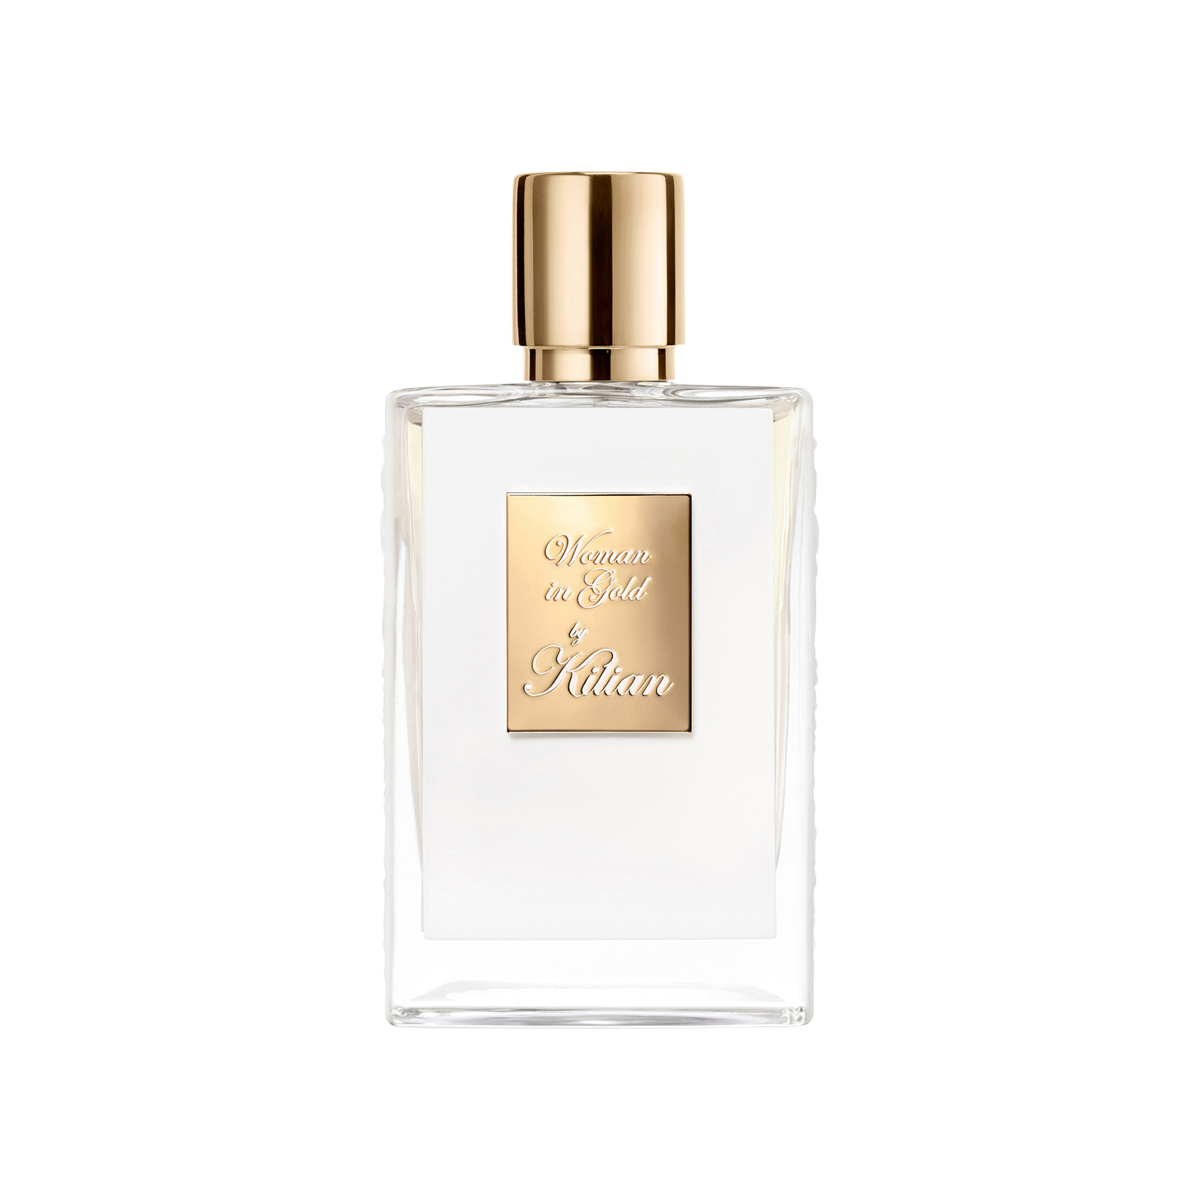 Kilian Paris - Woman in Gold Eau de Parfum